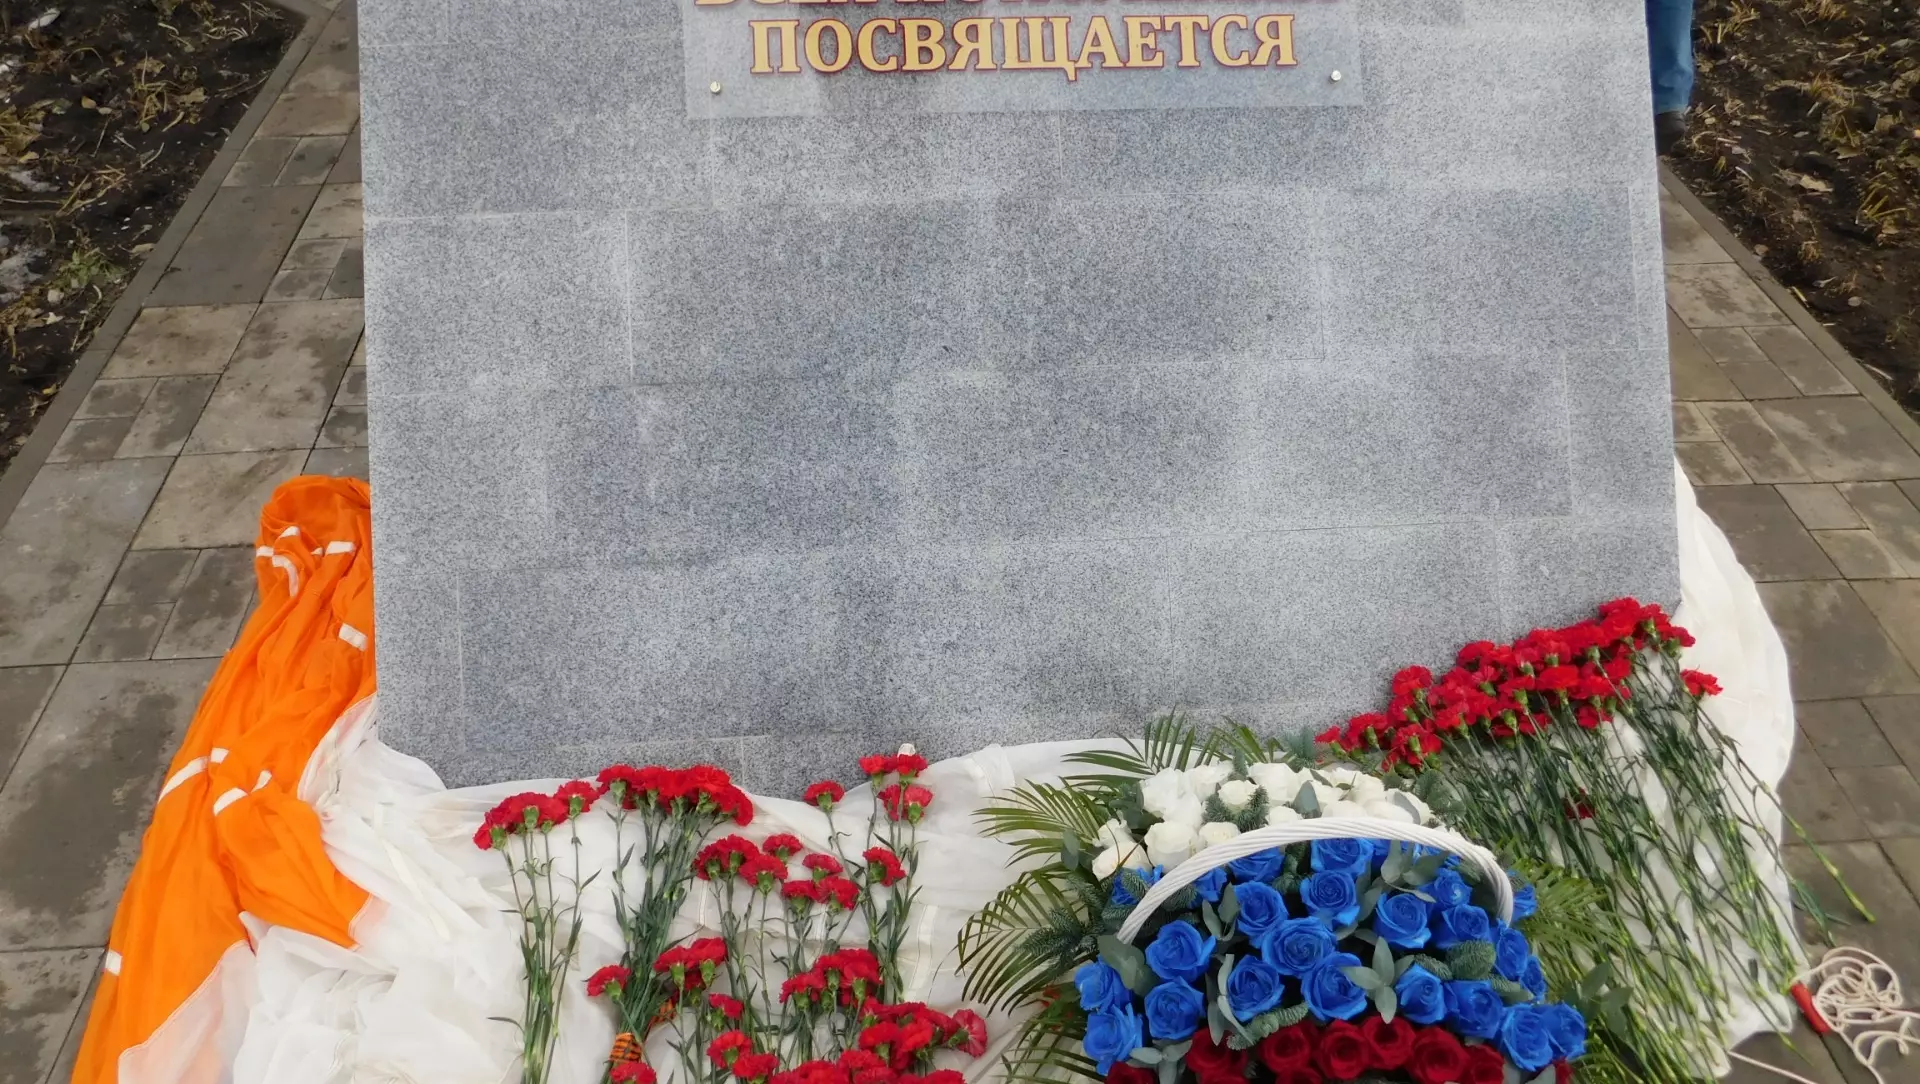 Три мемориальные доски и бюст Героя РФ появятся в Белгороде 